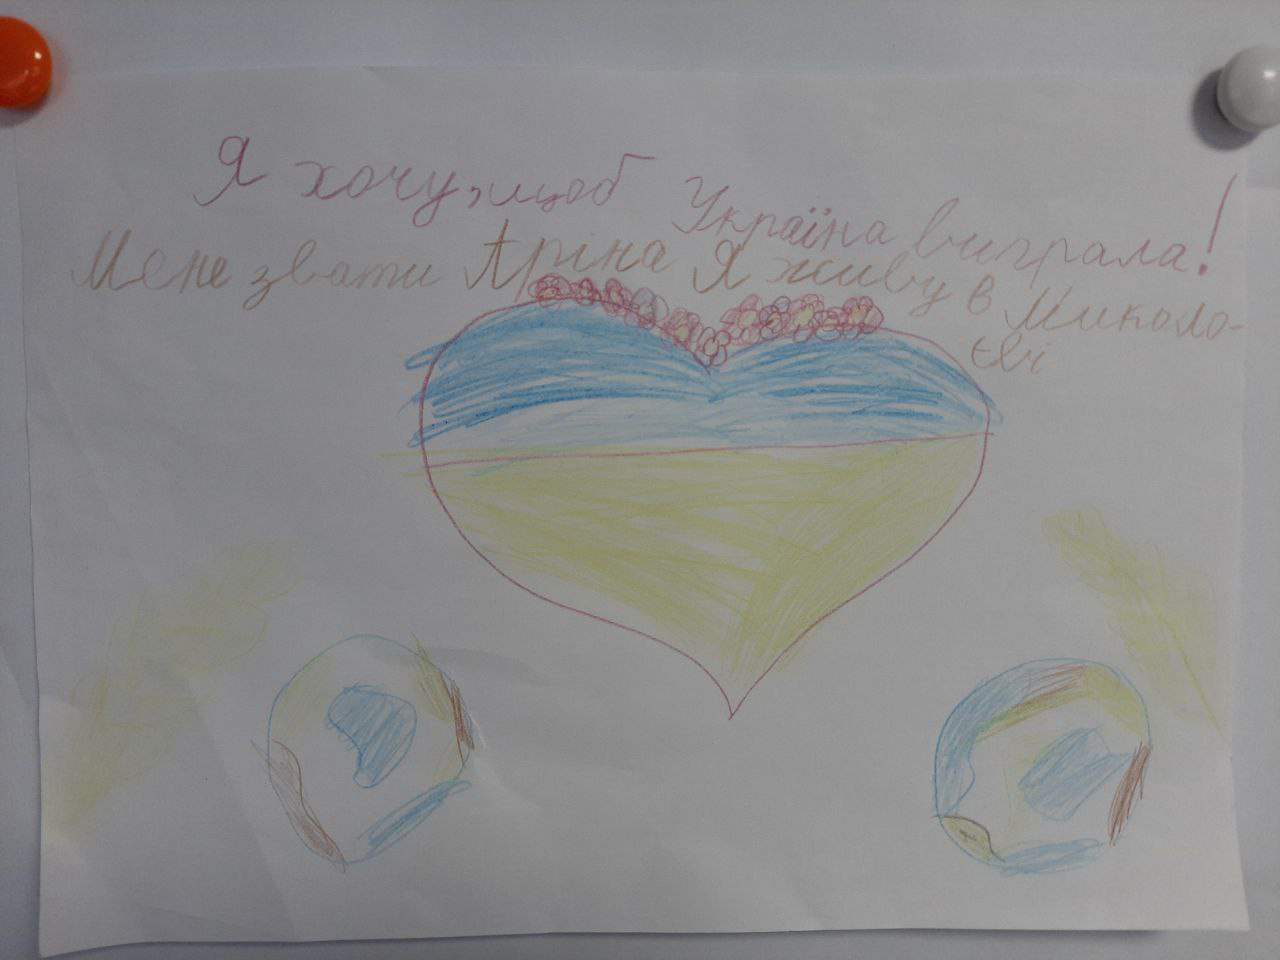 En barnteckning föreställande ett hjärta med Ukrainas flaggfärger blå och gul